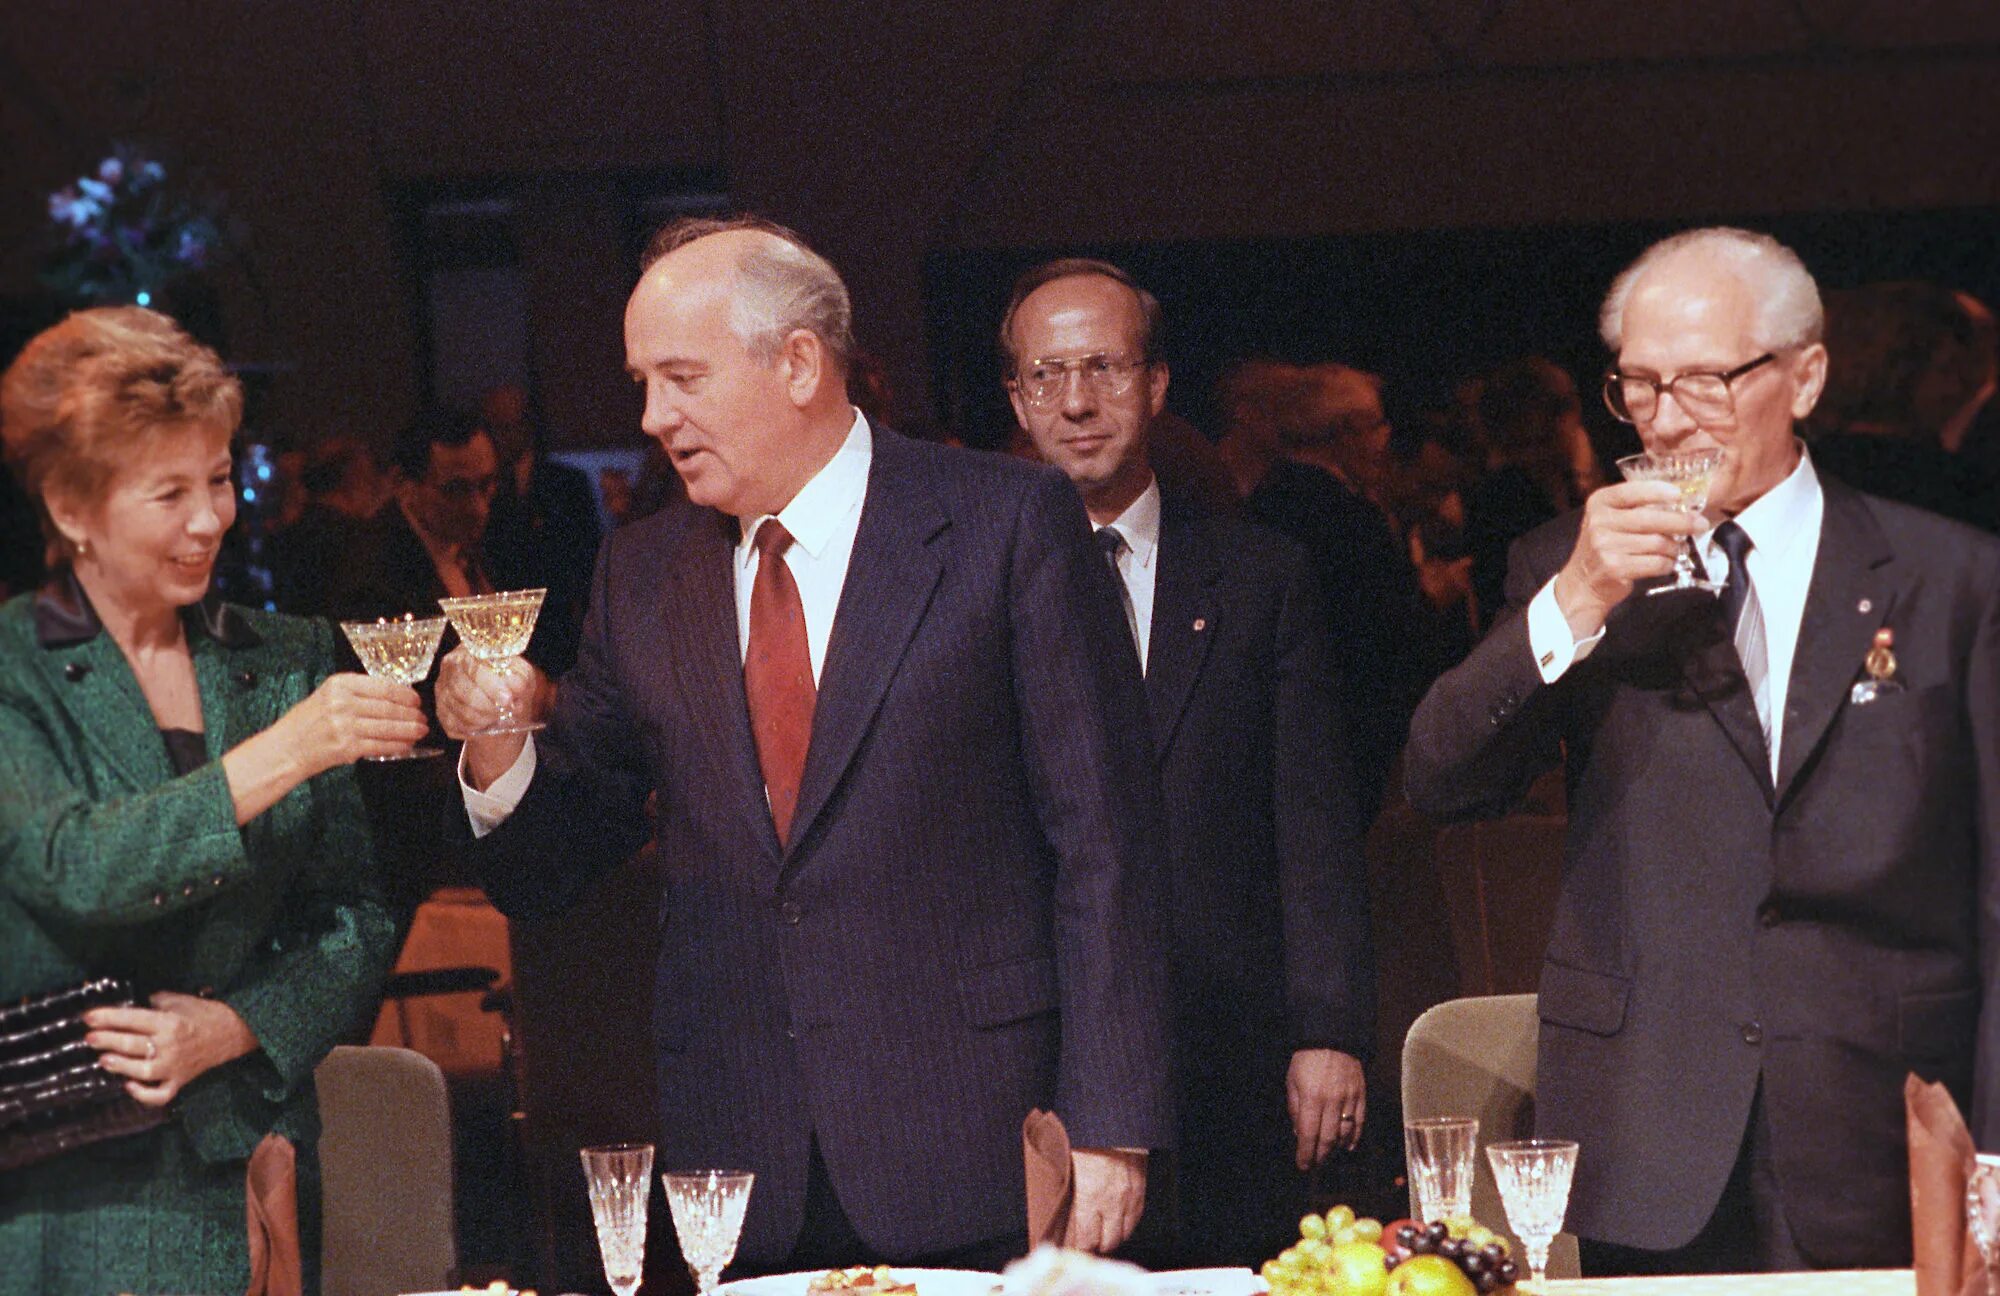 Роль горбачева в гдр кто играет. Горбачев в ГДР 1989. Визит Горбачева в ФРГ 1989. Визит м. Горбачева в Берлин 6 октября 1989 г. Визит Горбачева в ГДР 1989.